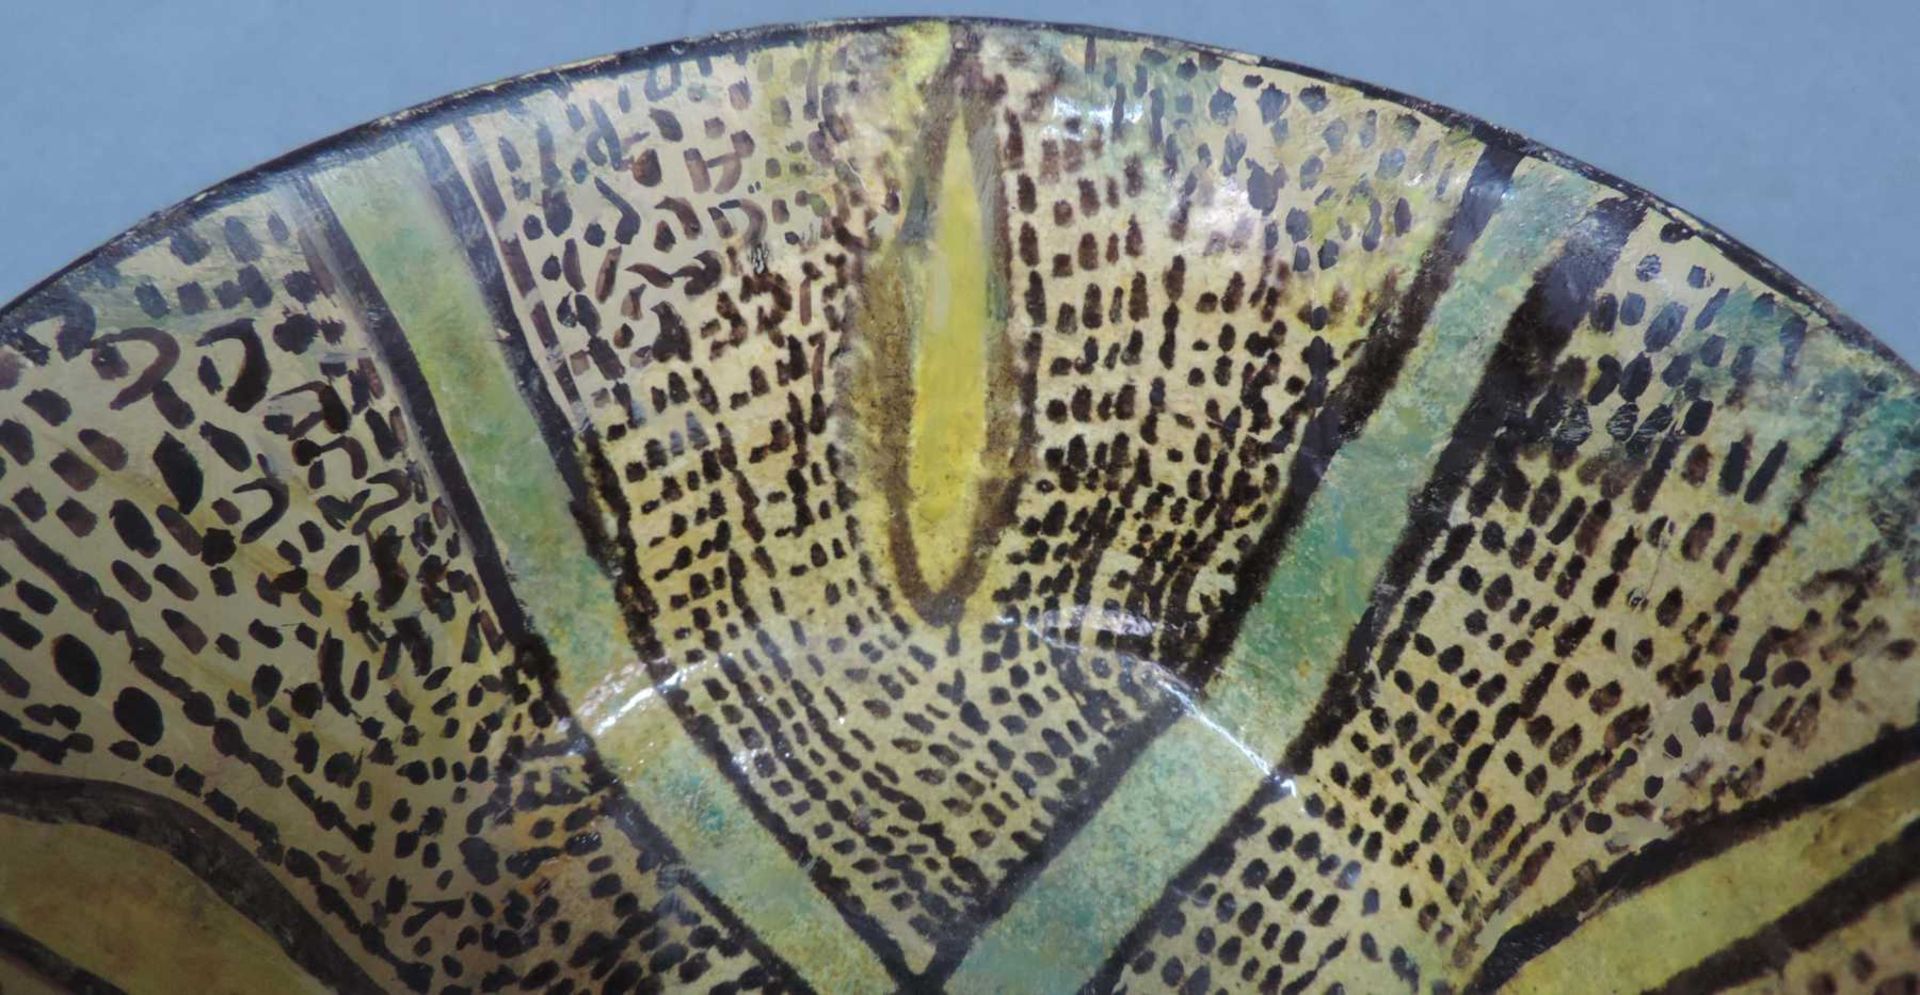 Koppchen. Wohl Persien, Khorasan antik. 13. - 14. Jahrhundert? 7 cm hoch, 14,5 cm Durchmesser. - Bild 2 aus 5